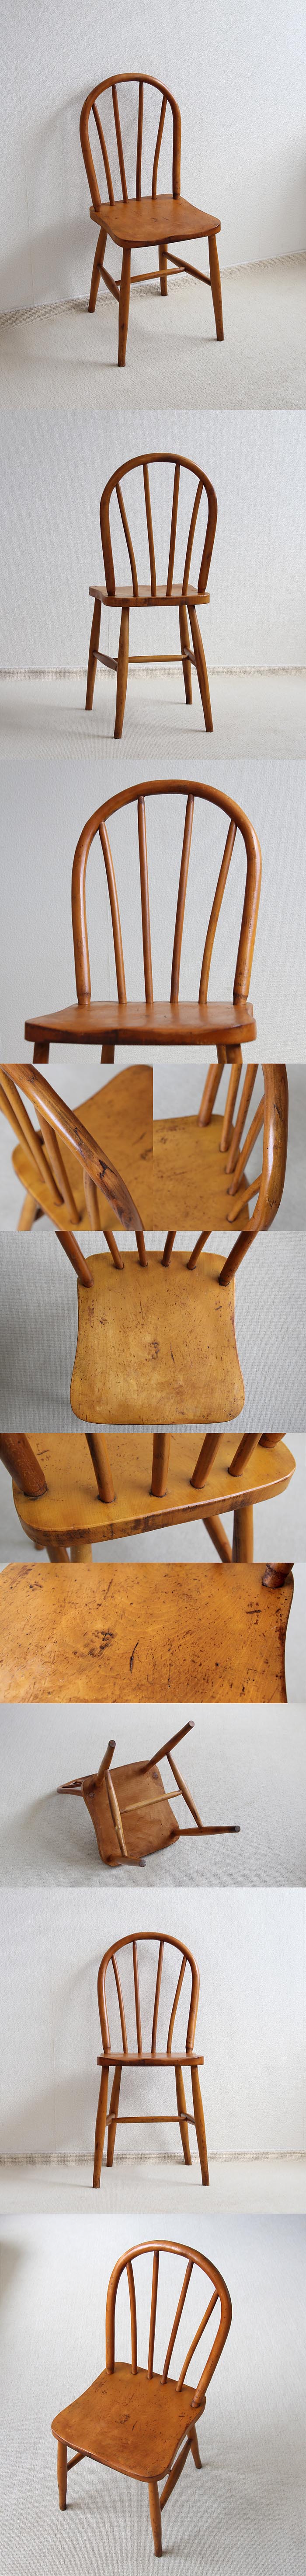 イギリス ヴィンテージ キッチンチェア 木製椅子 英国 家具「フープバックチェア」V-559